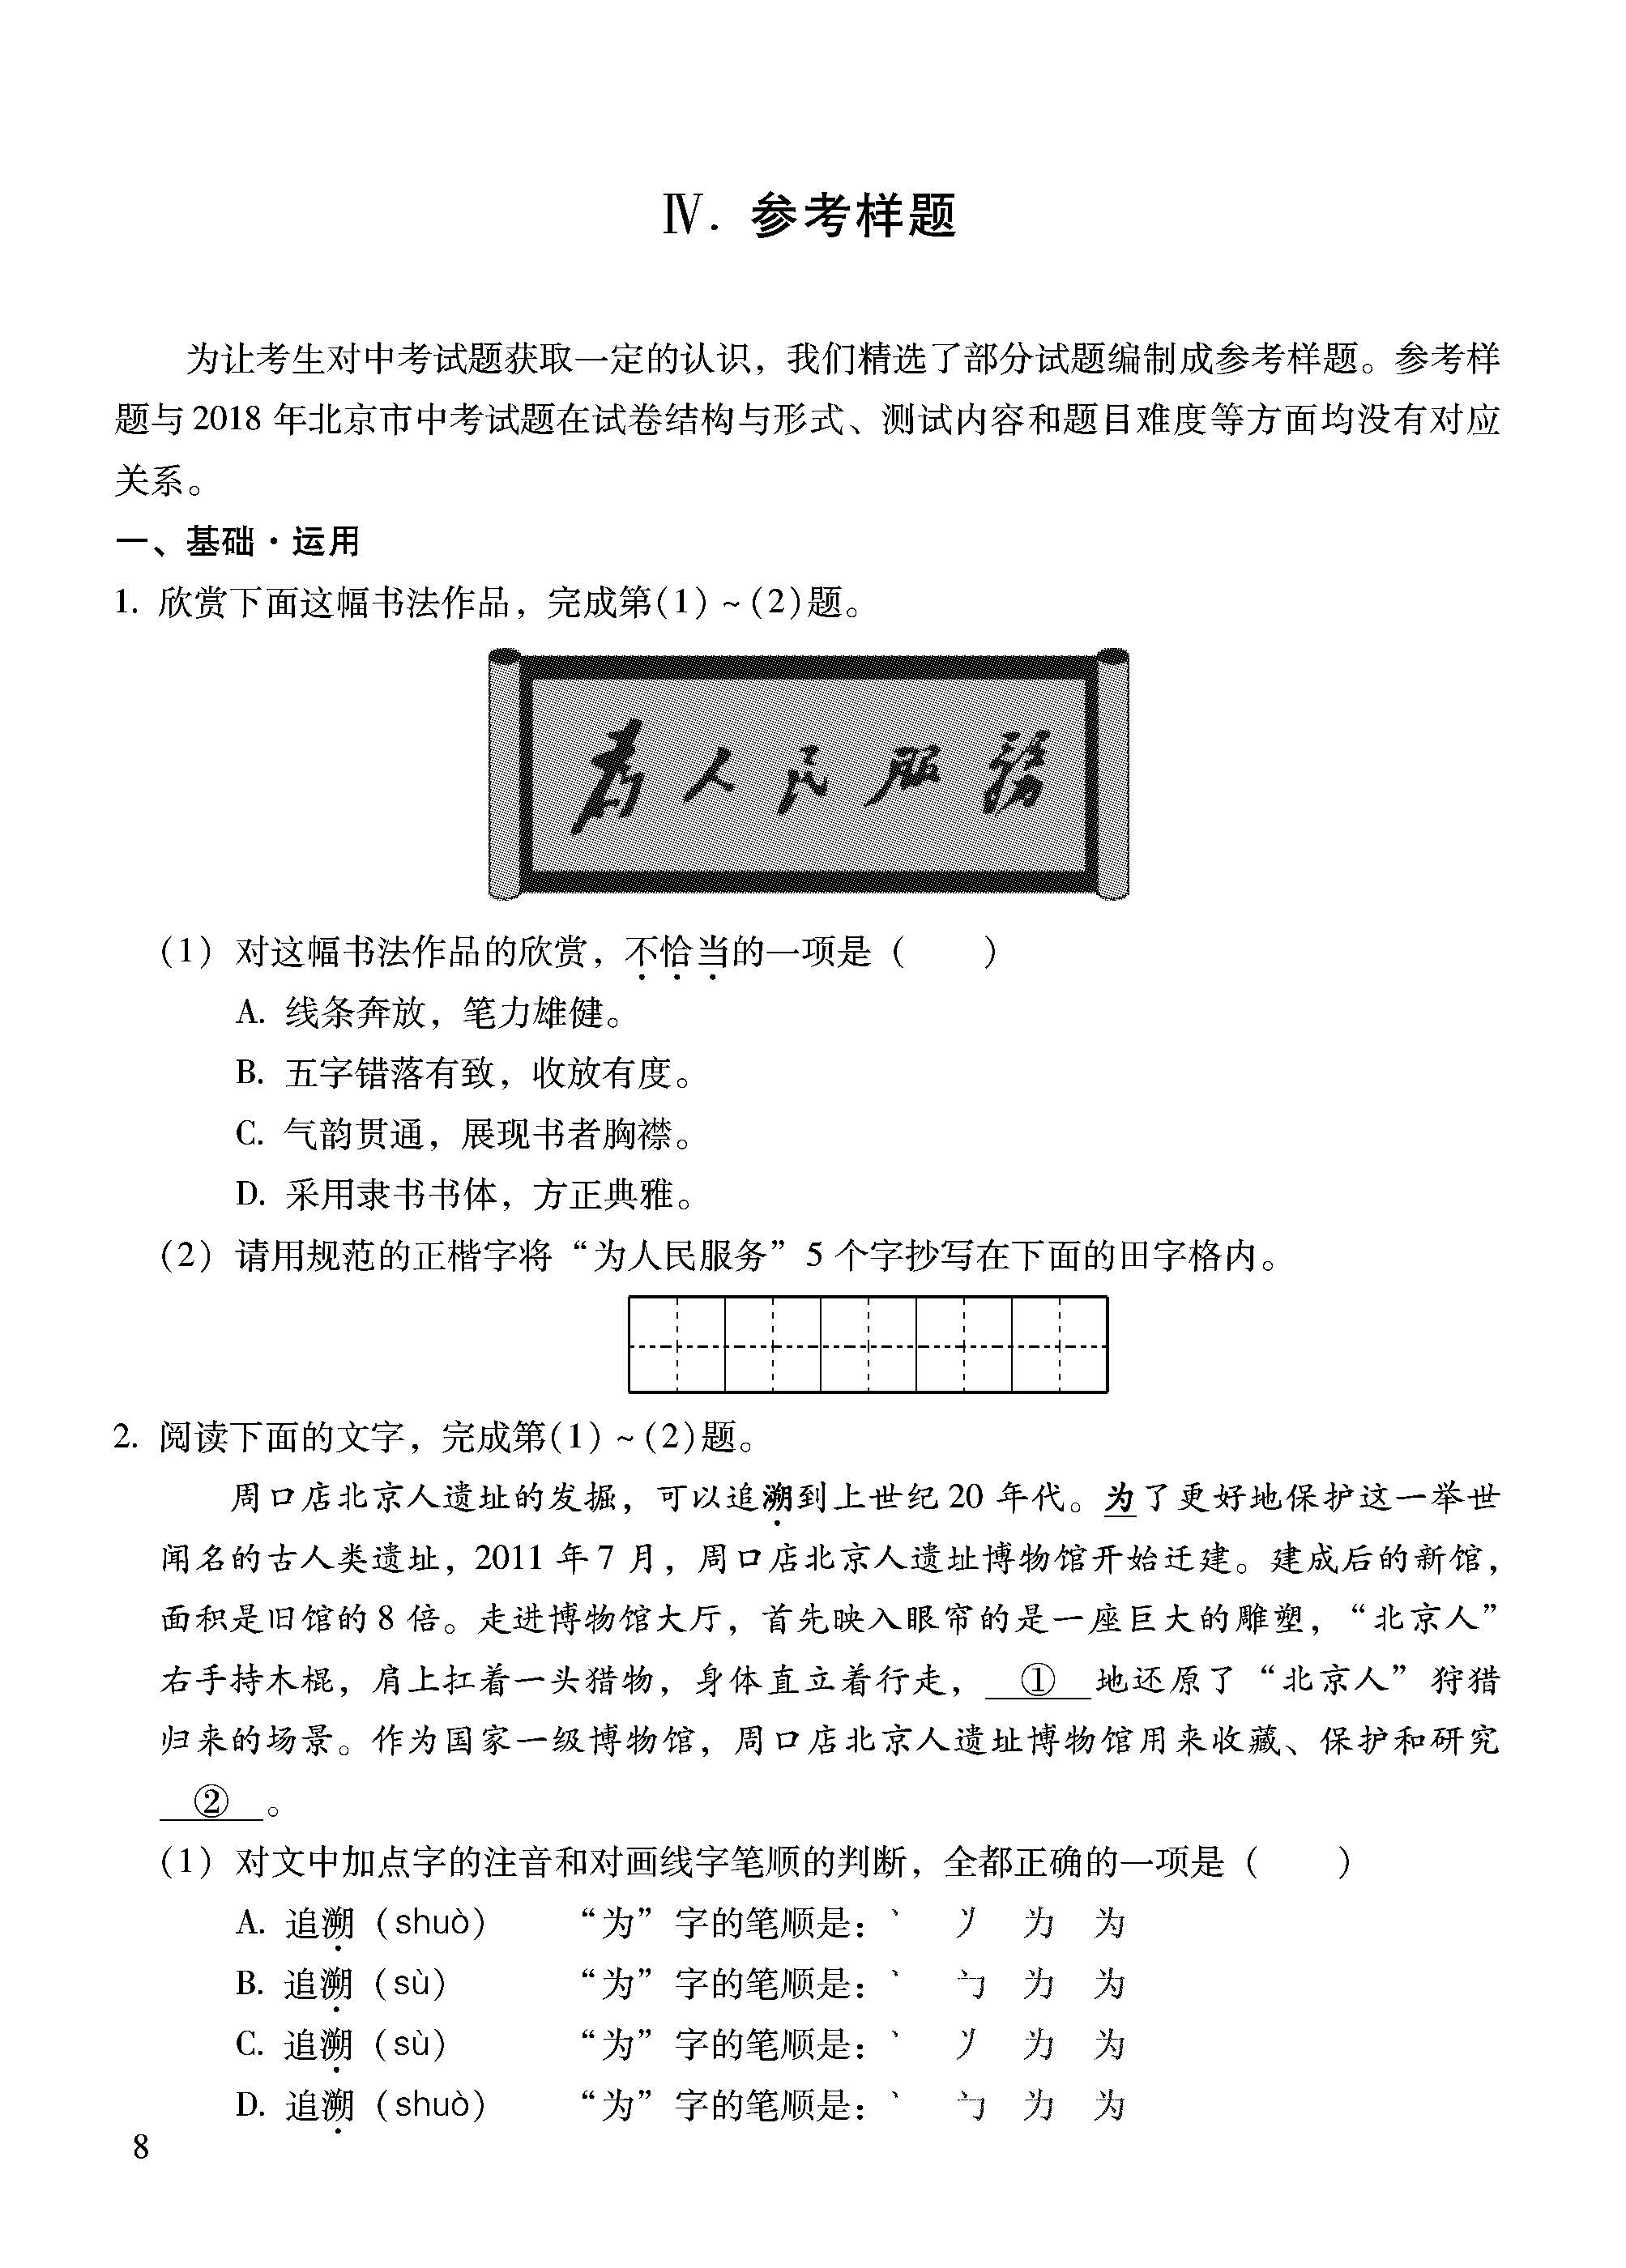 2018北京中考语文考试说明:参考样题